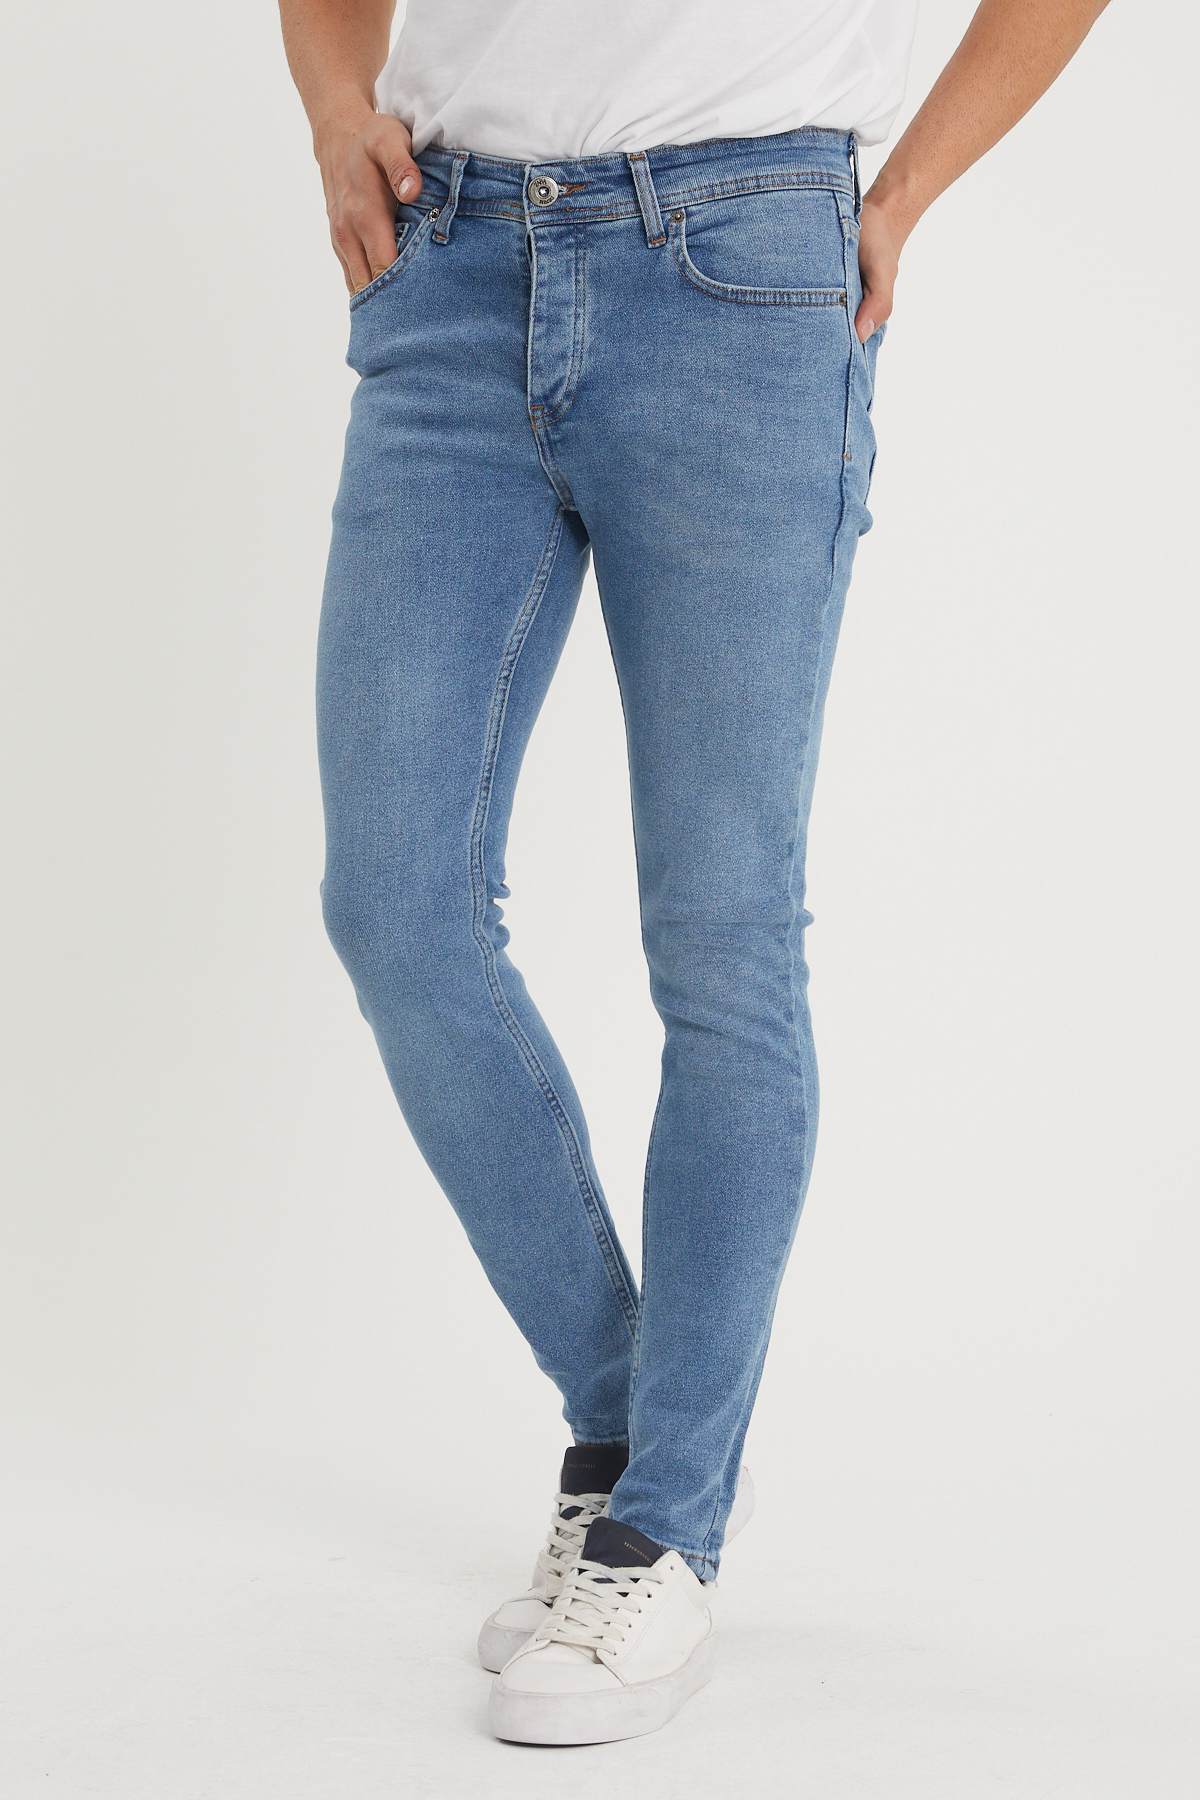 Mavi Slim Fit Jean Pantolon 1KXE5-44351-12 - 1